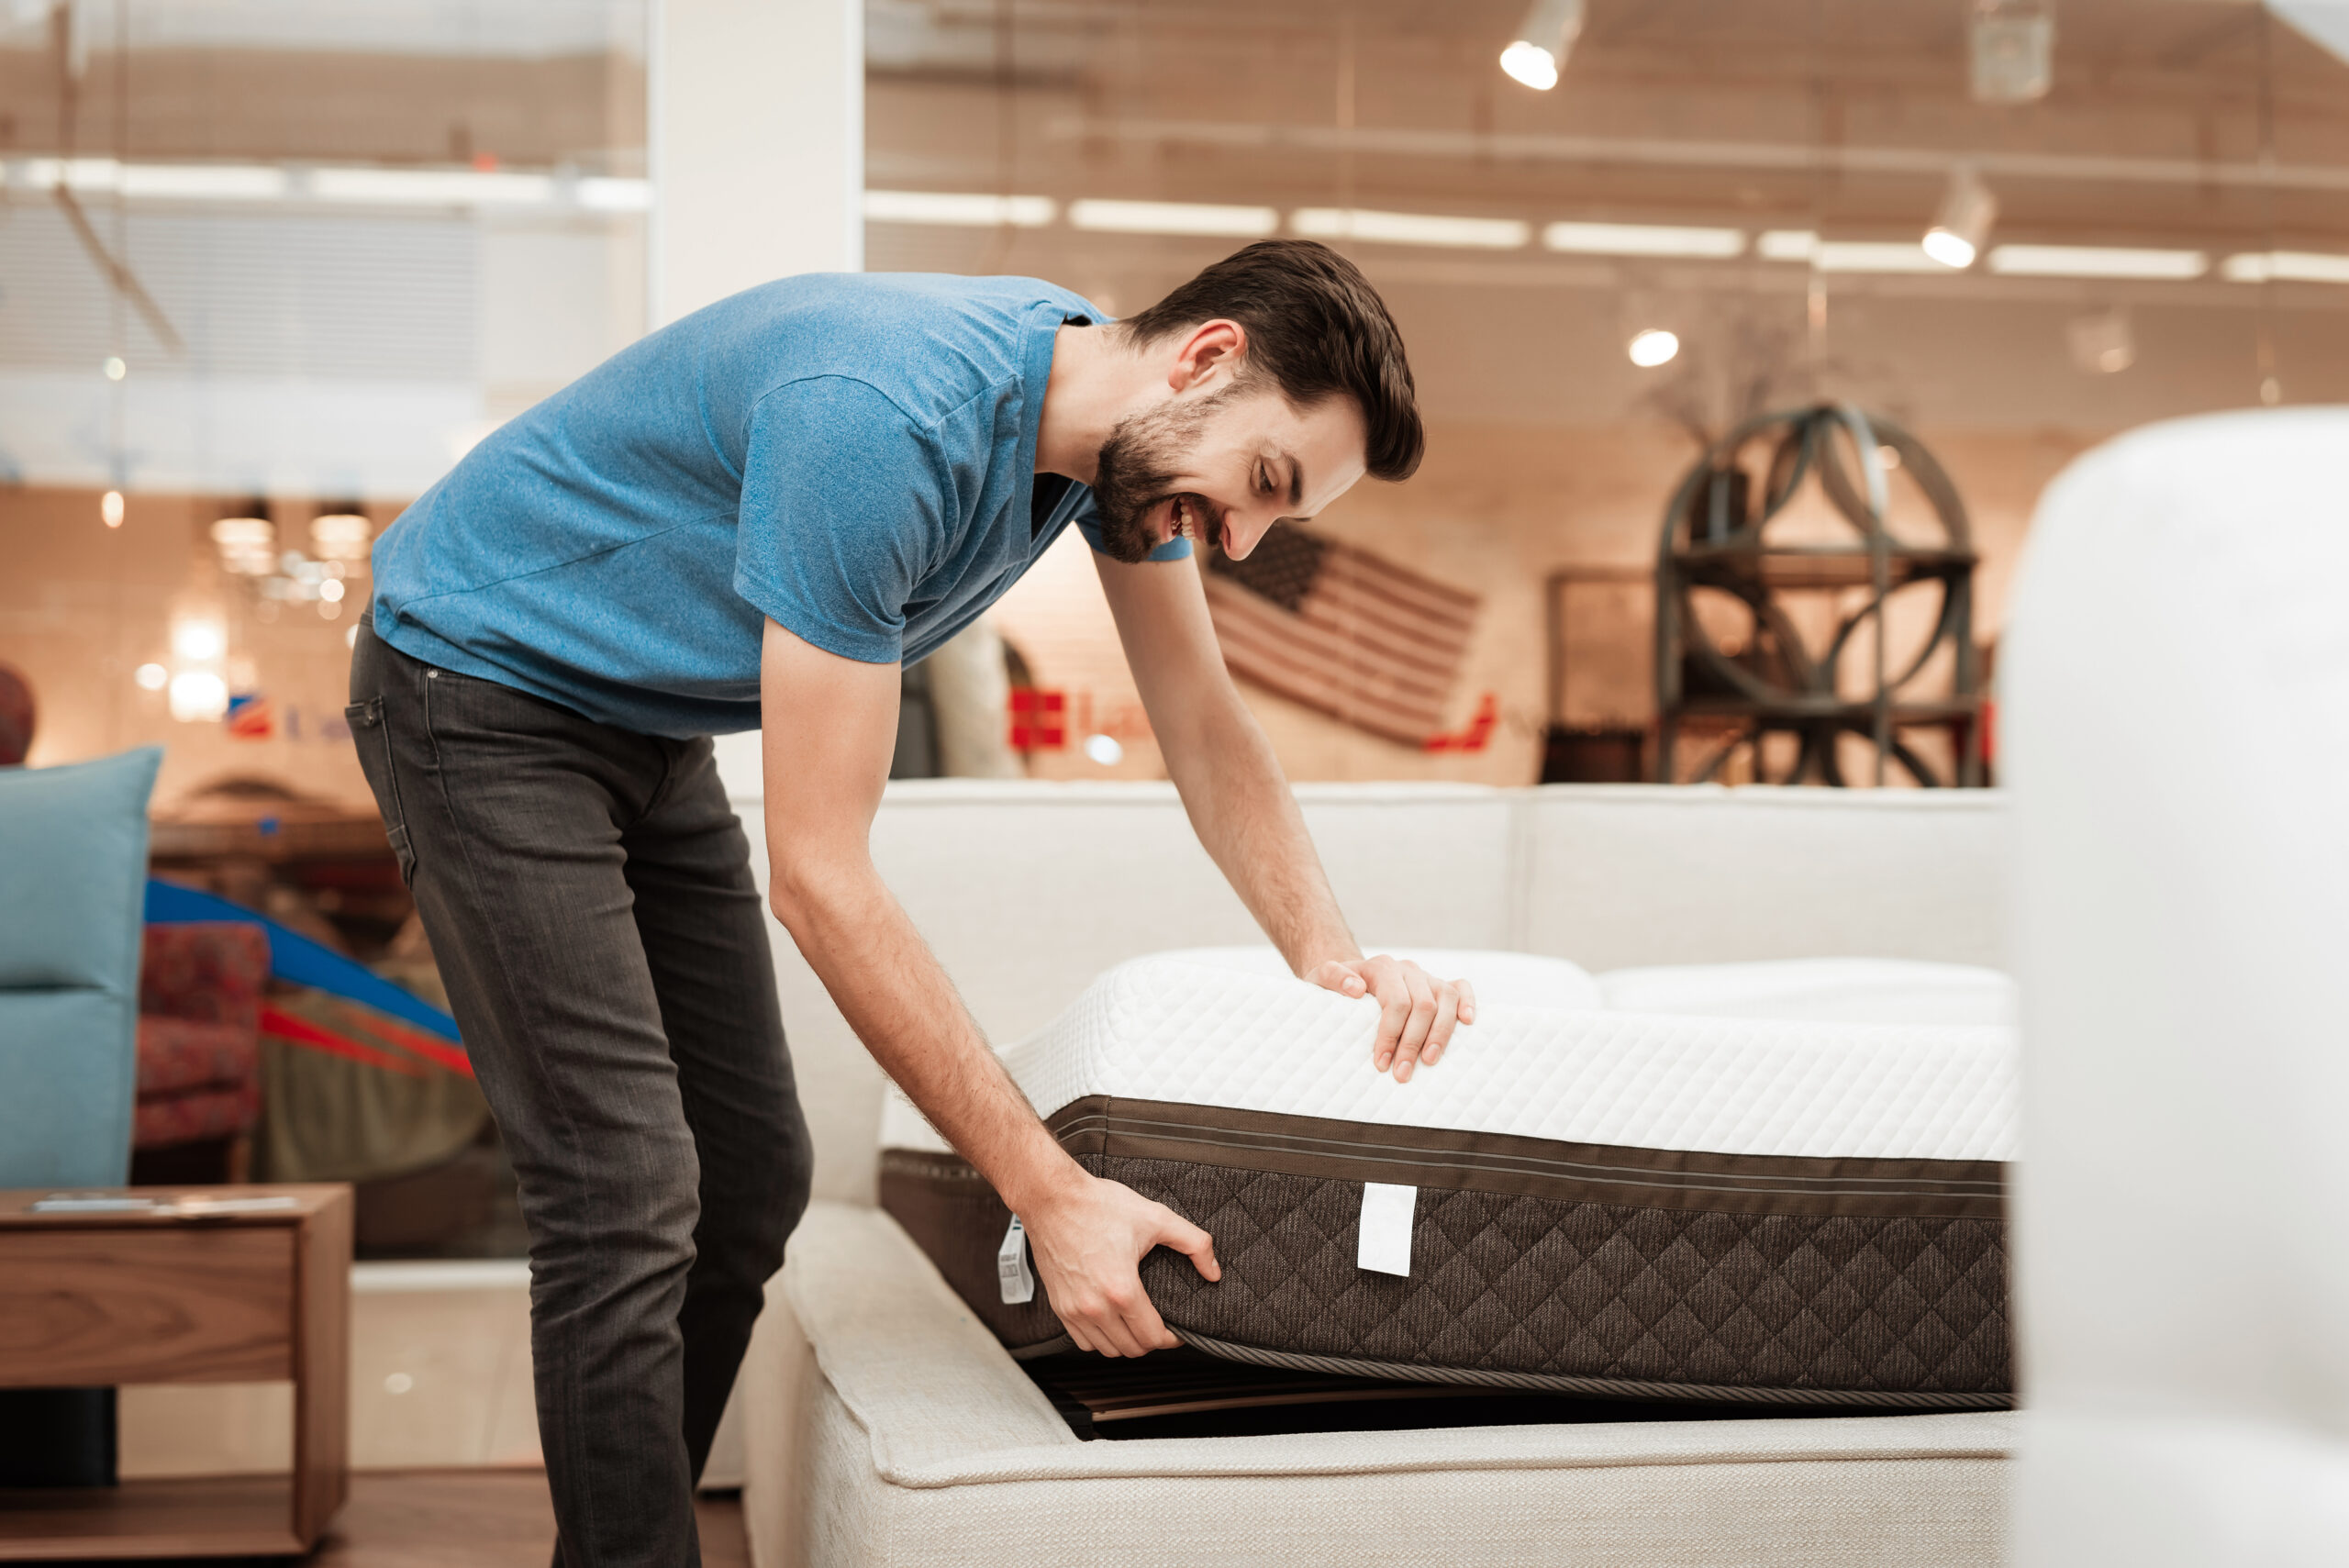 PICK THE PERFECT MATTRESS LIKE A PRO! Follow our tips for shopping for the perfect mattress for your space